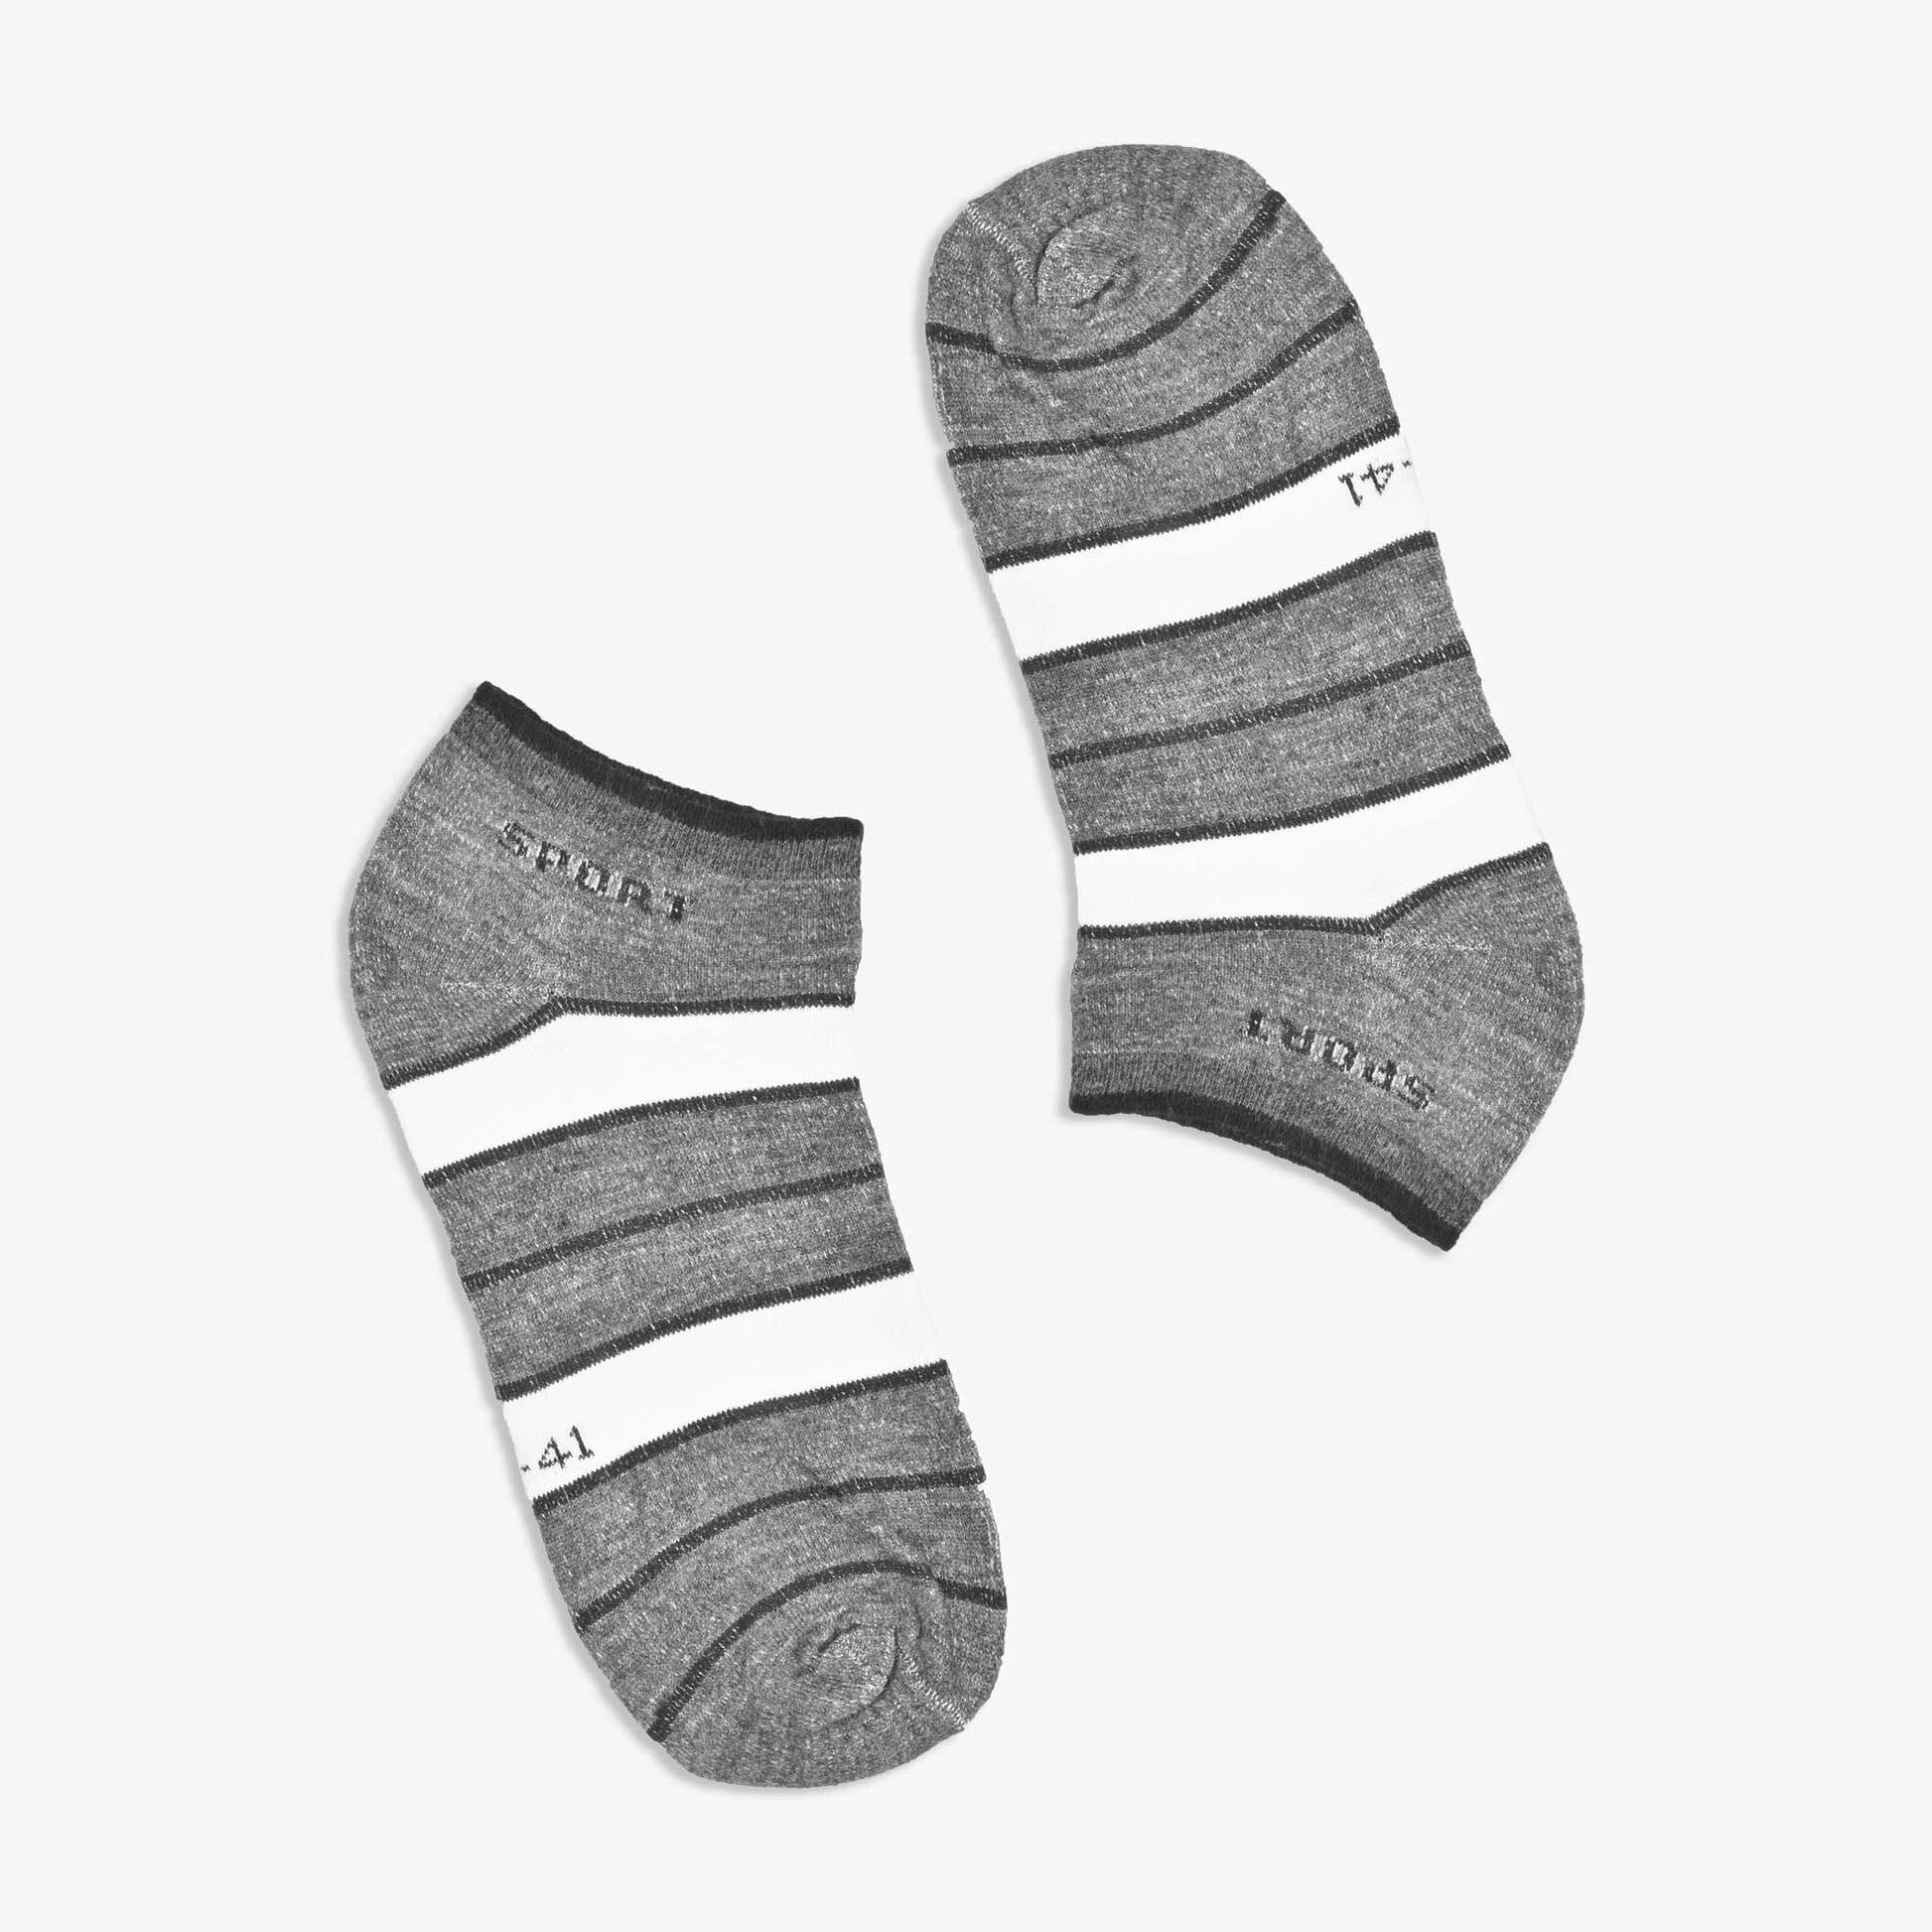 Leija Men's Sport Anklet Socks Socks SRL D1 EUR 38-43 